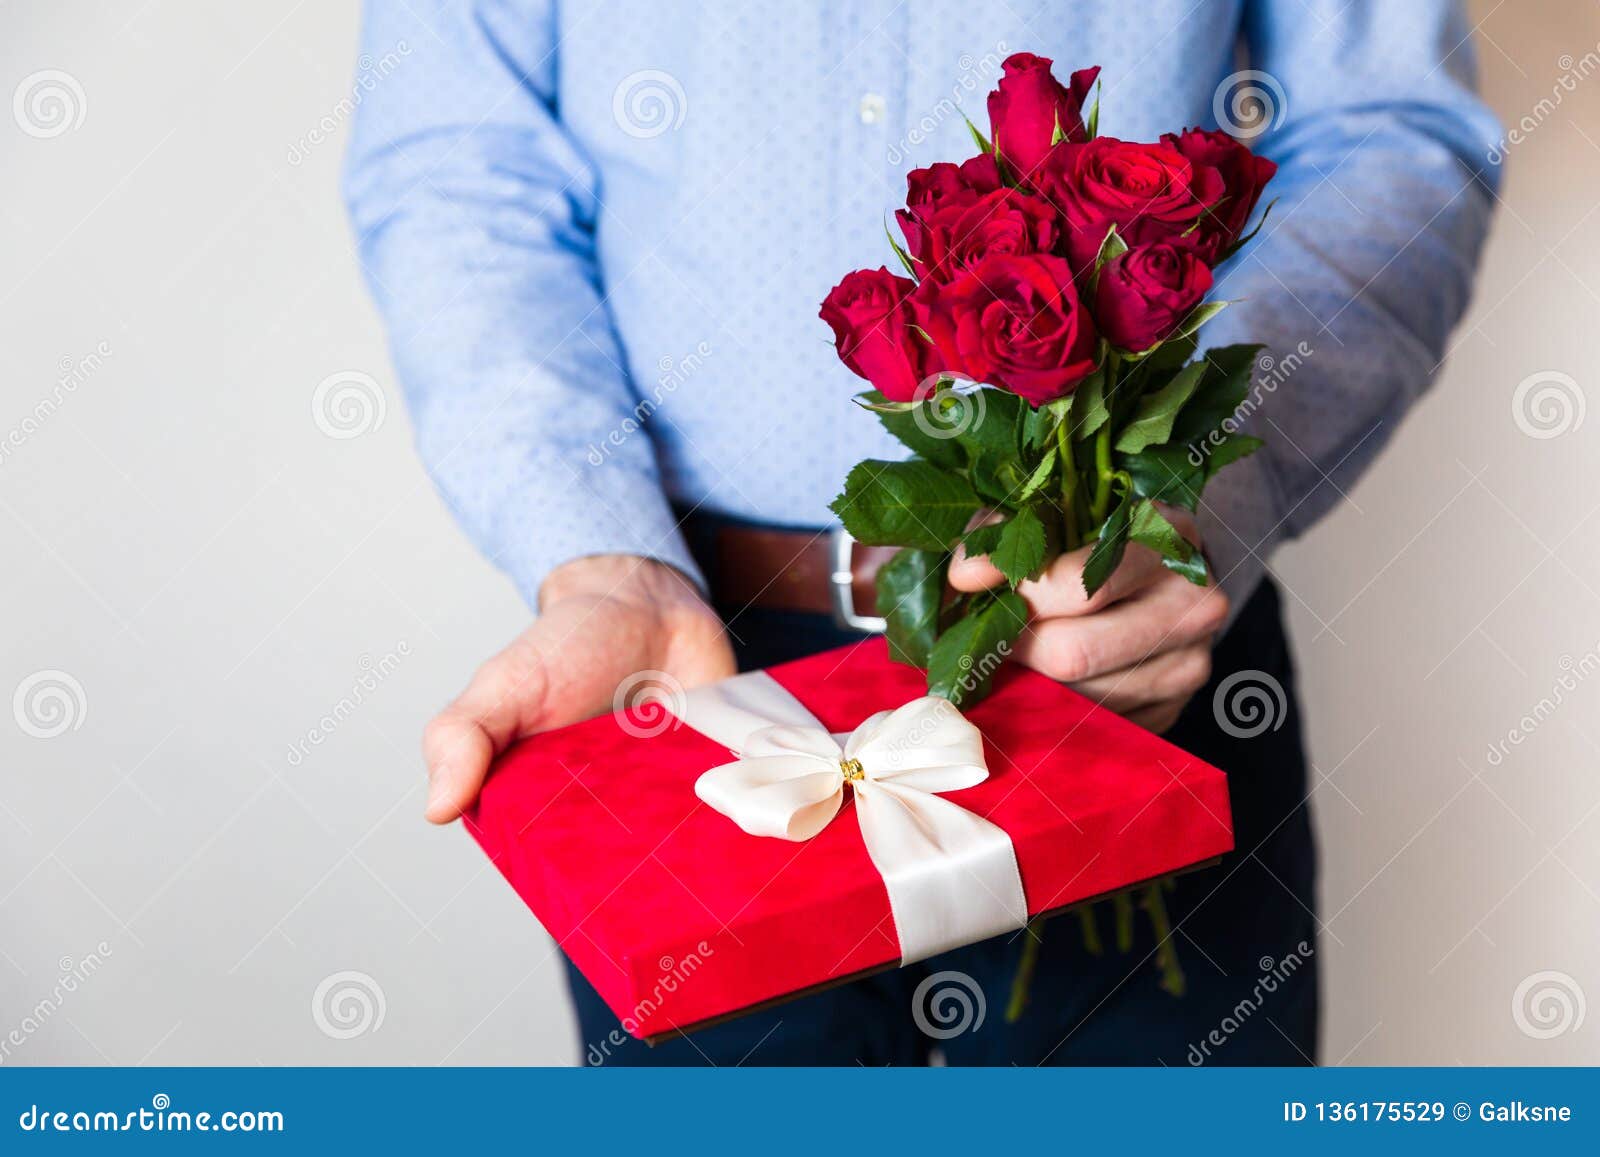 Celebre el día de san valentín regalos románticos e ideas de regalos de san  valentín hombre guapo y elegante está sosteniendo bo